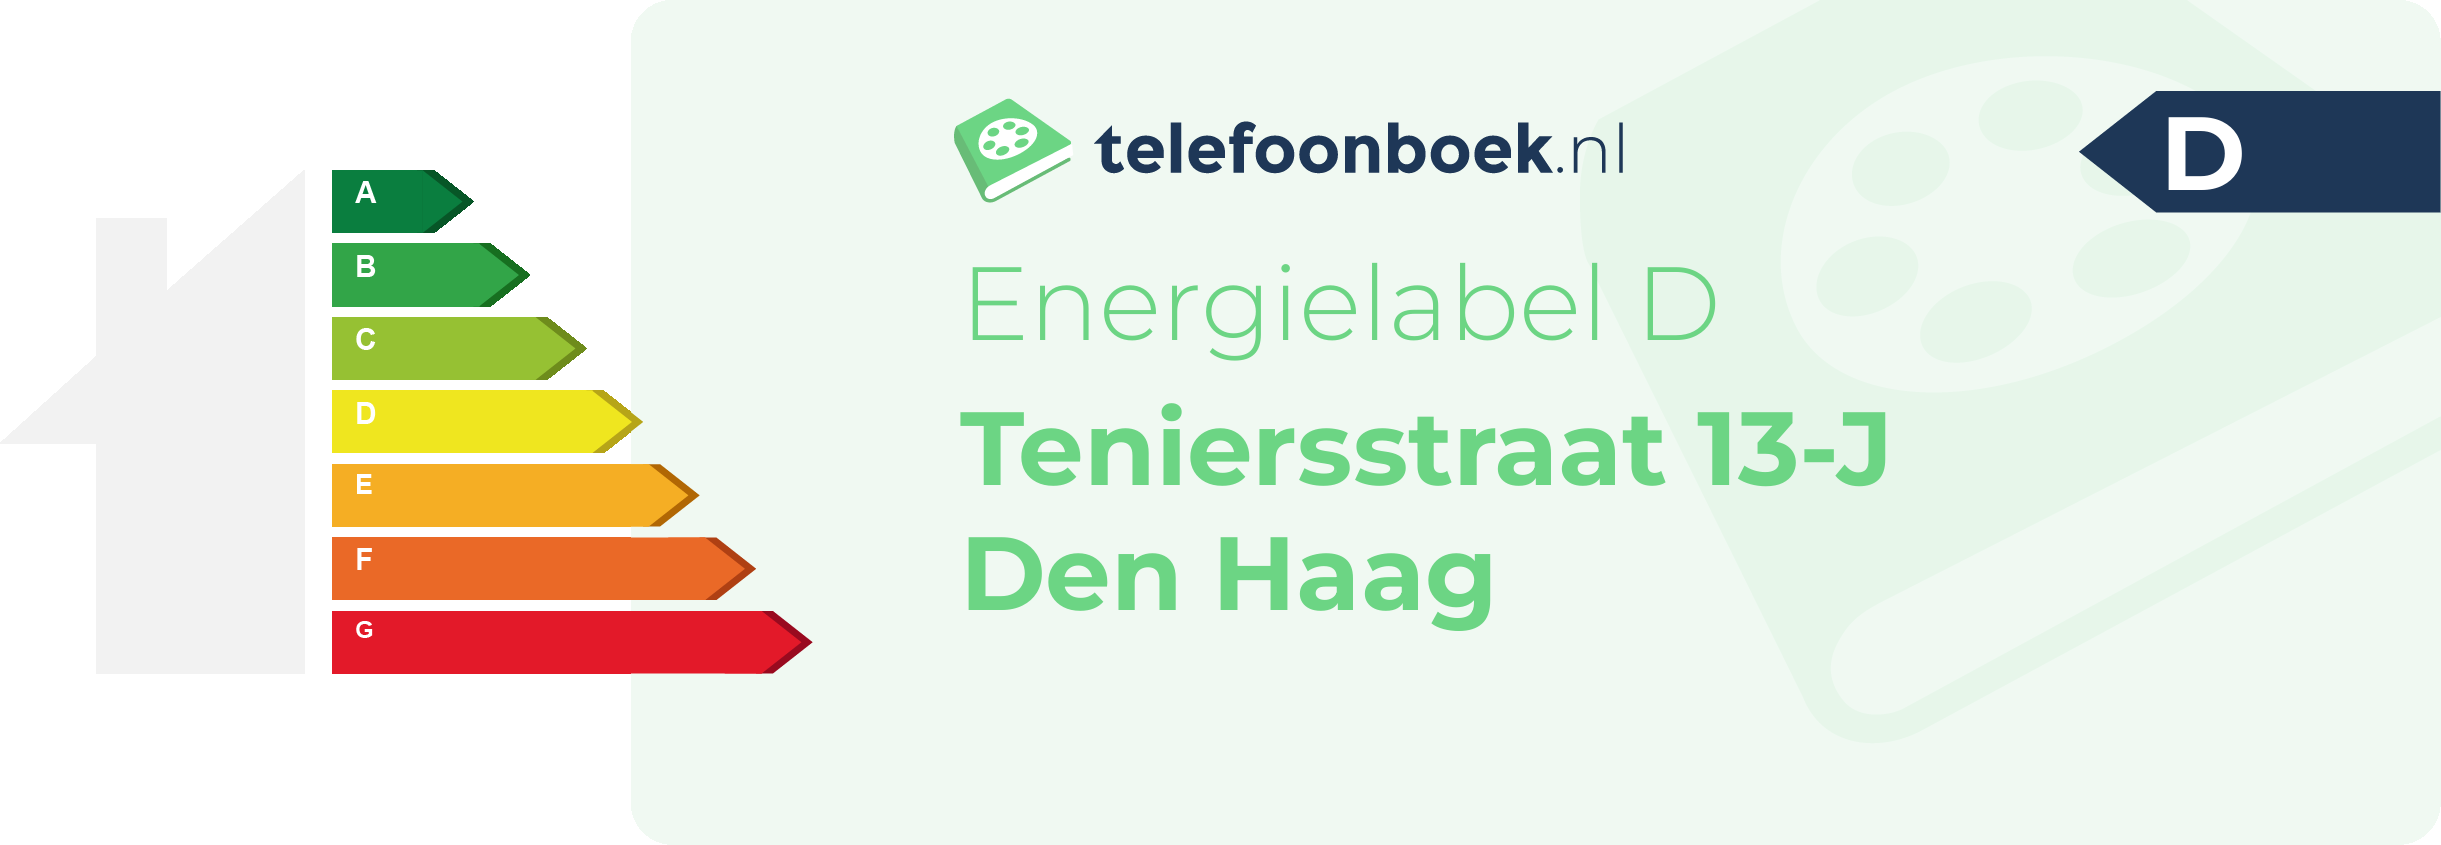 Energielabel Teniersstraat 13-J Den Haag